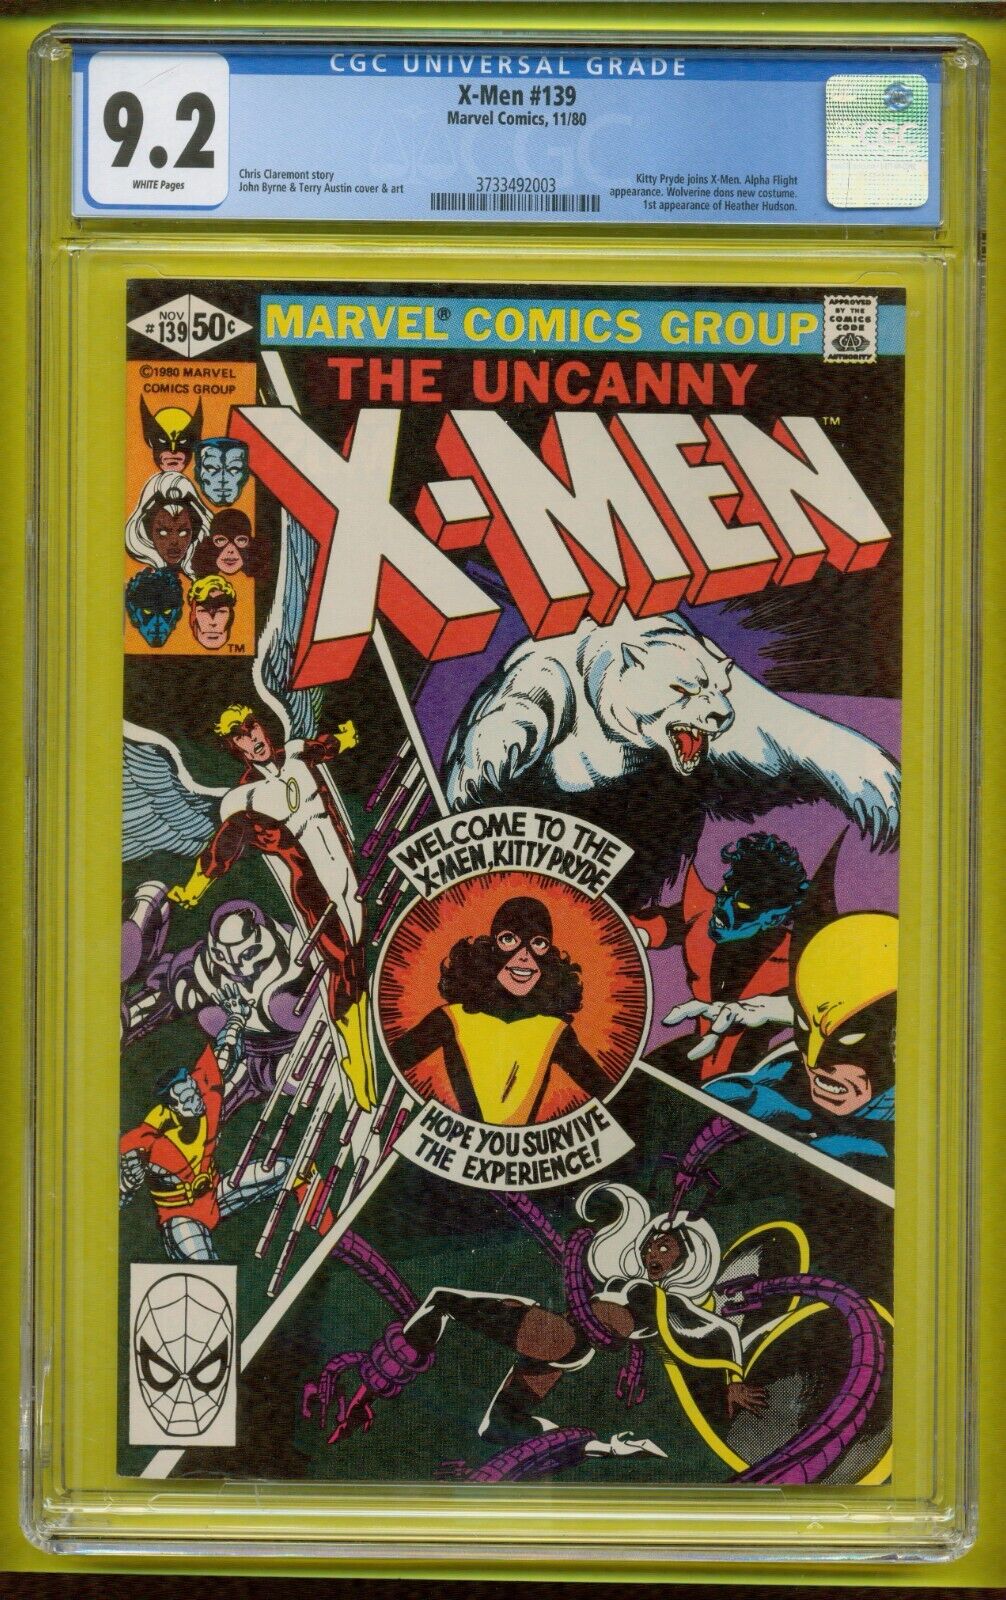 THE UNCANNY X-MEN # 139 NOVEMBER 1980 MARVEL CGC 9.2 NEAR MINT- ITEM: 24-485